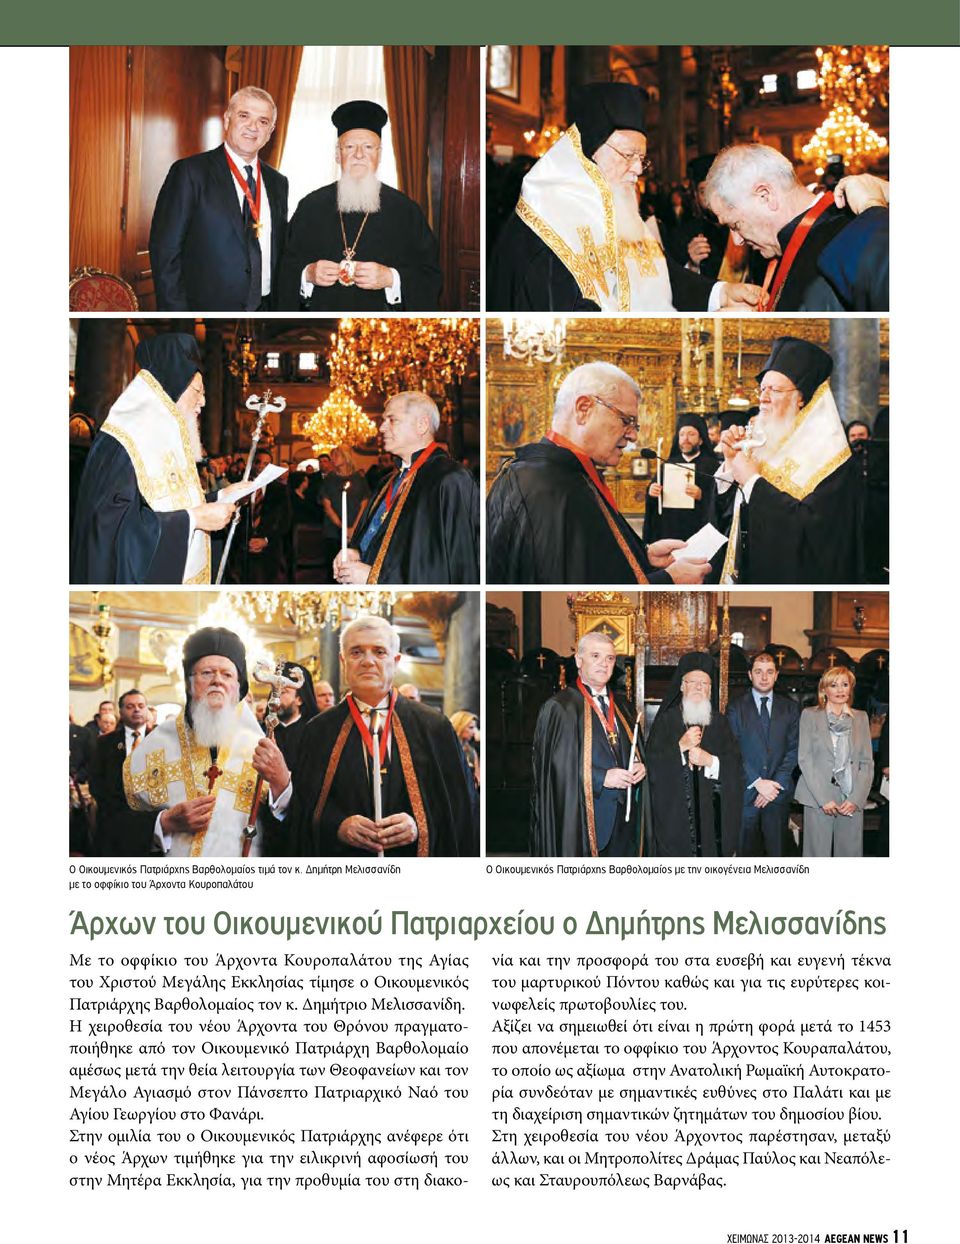 οφφίκιο του Άρχοντα Κουροπαλάτου της Αγίας του Χριστού Μεγάλης Εκκλησίας τίμησε ο Οικουμενικός Πατριάρχης Βαρθολομαίος τον κ. Δημήτριο Μελισσανίδη.